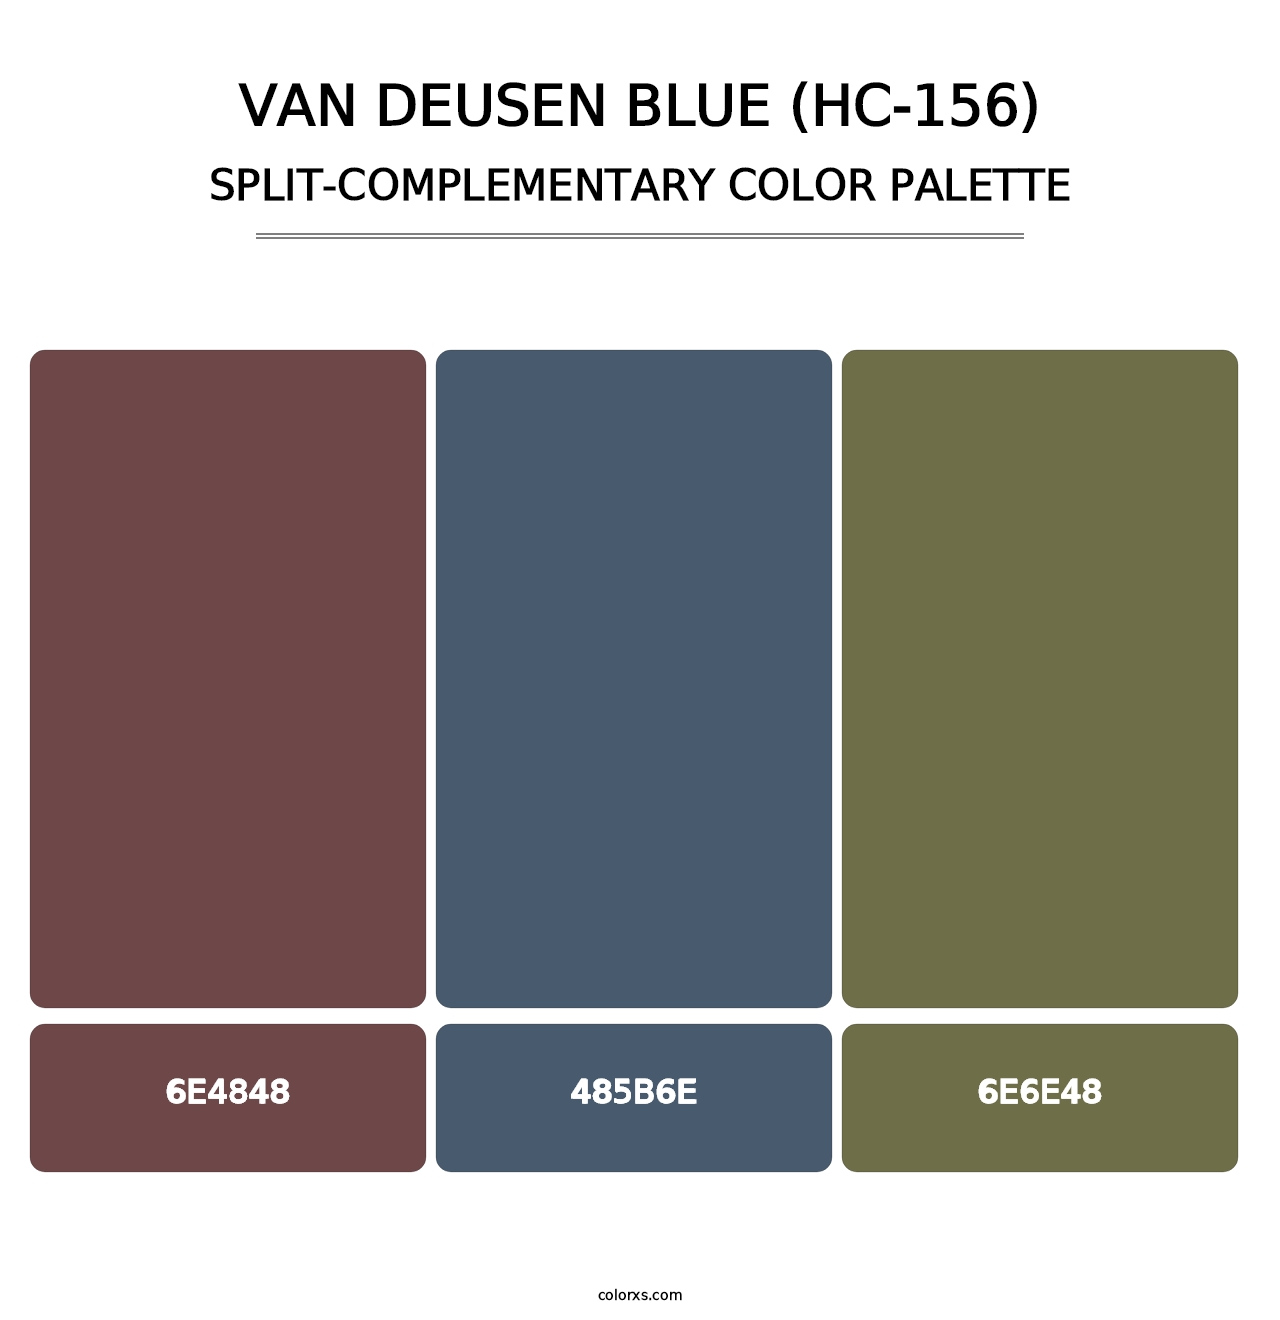 Van Deusen Blue (HC-156) - Split-Complementary Color Palette